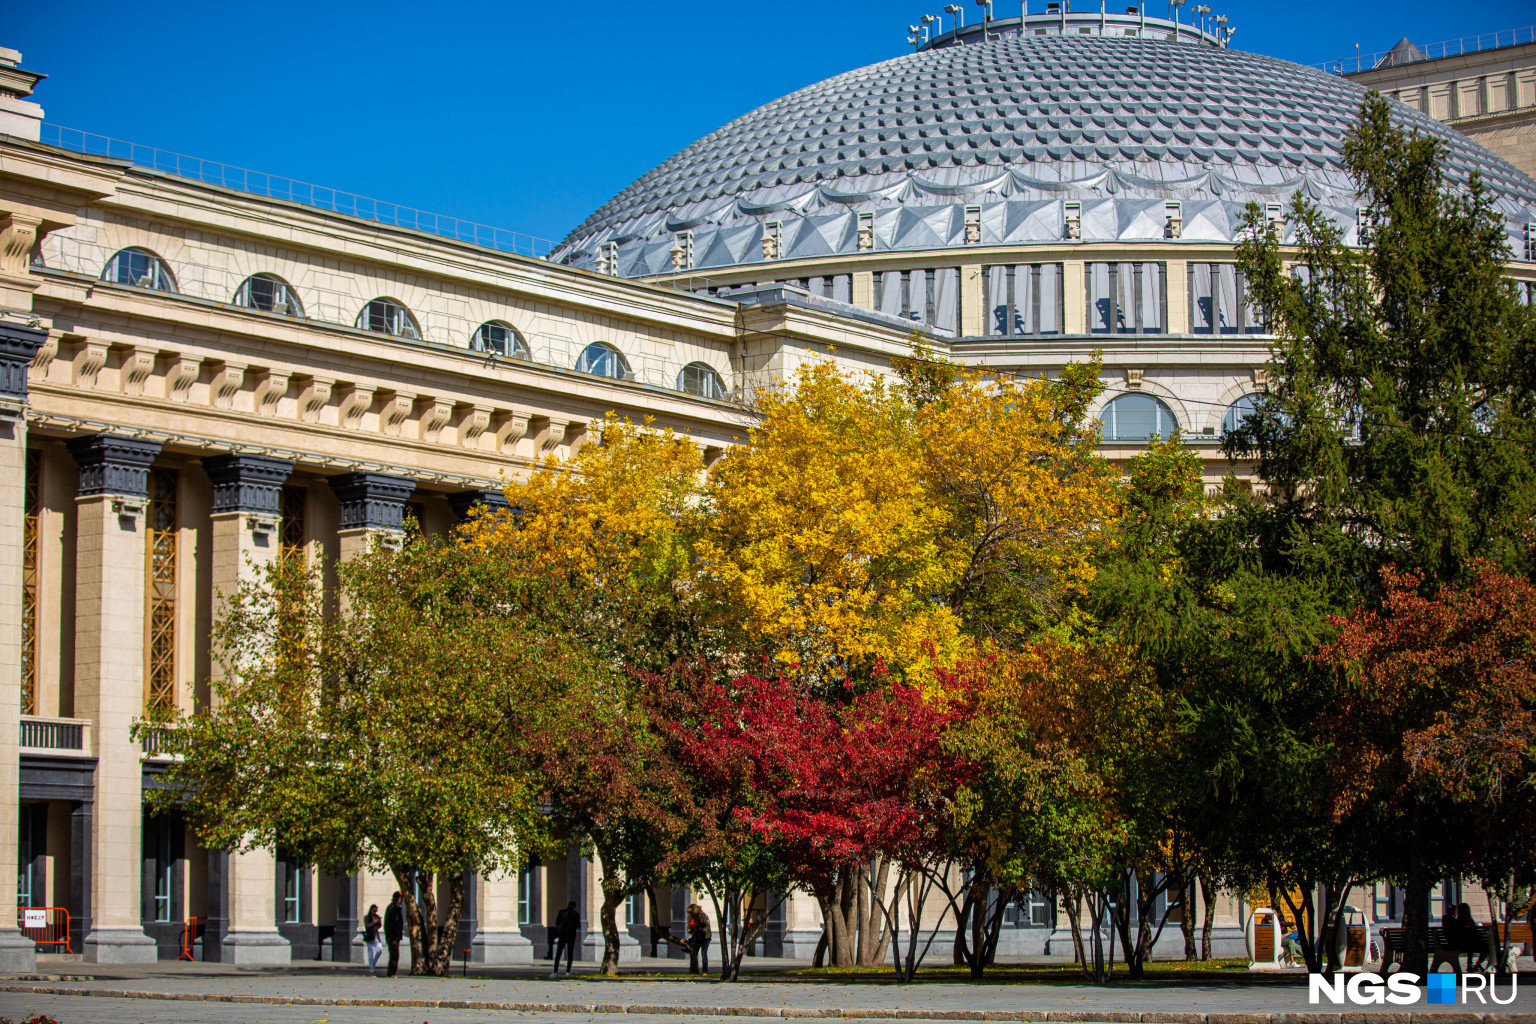 Легендарный Оперный театр выглядит еще торжественнее и величественнее в окружении разноцветных осенних деревьев...